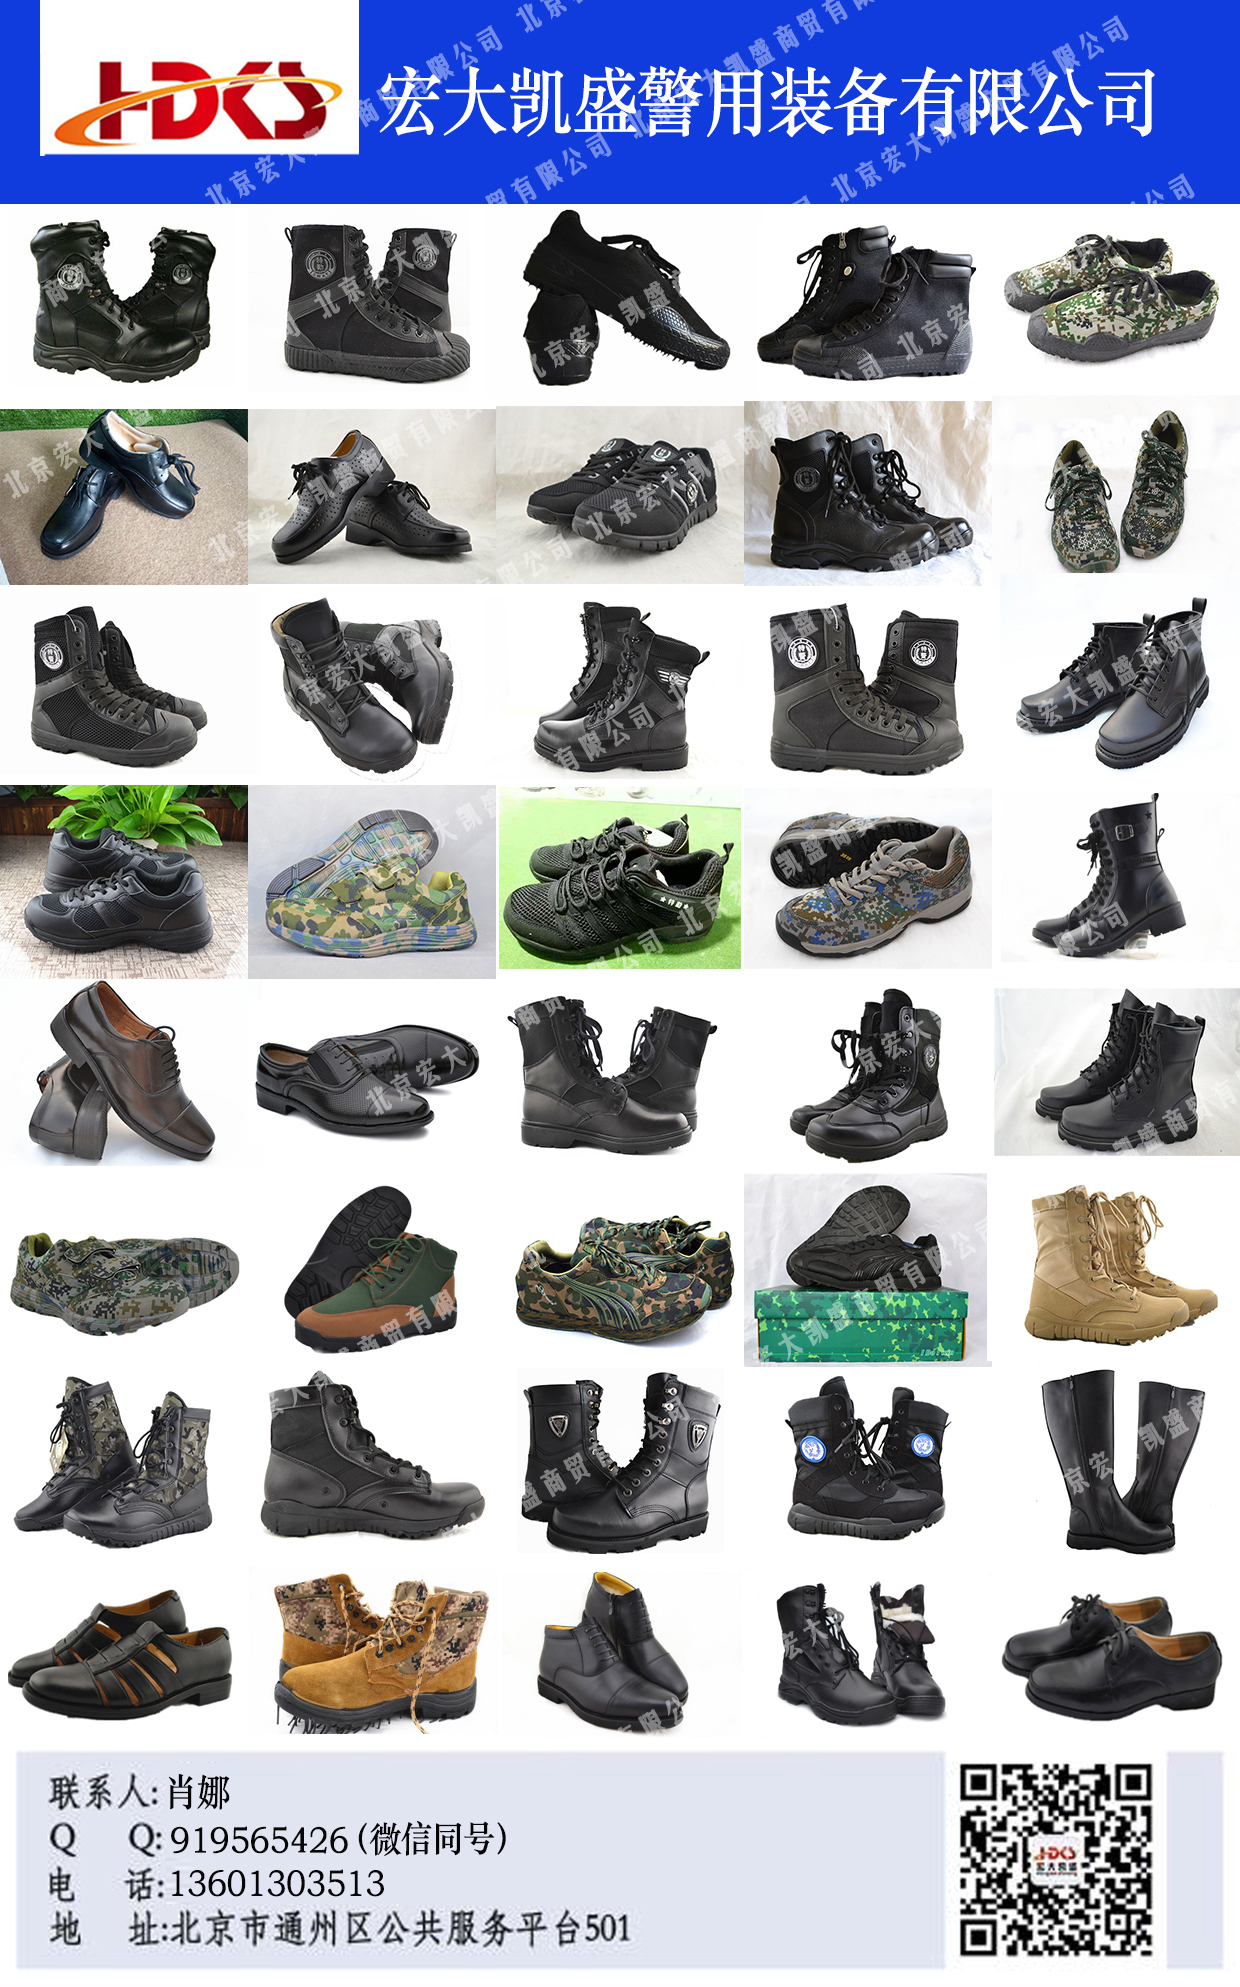 87式潜艇布鞋八七式布鞋老式海军布鞋-价格:10元-au31530769-旧军鞋/靴 -加价-7788收藏__收藏热线